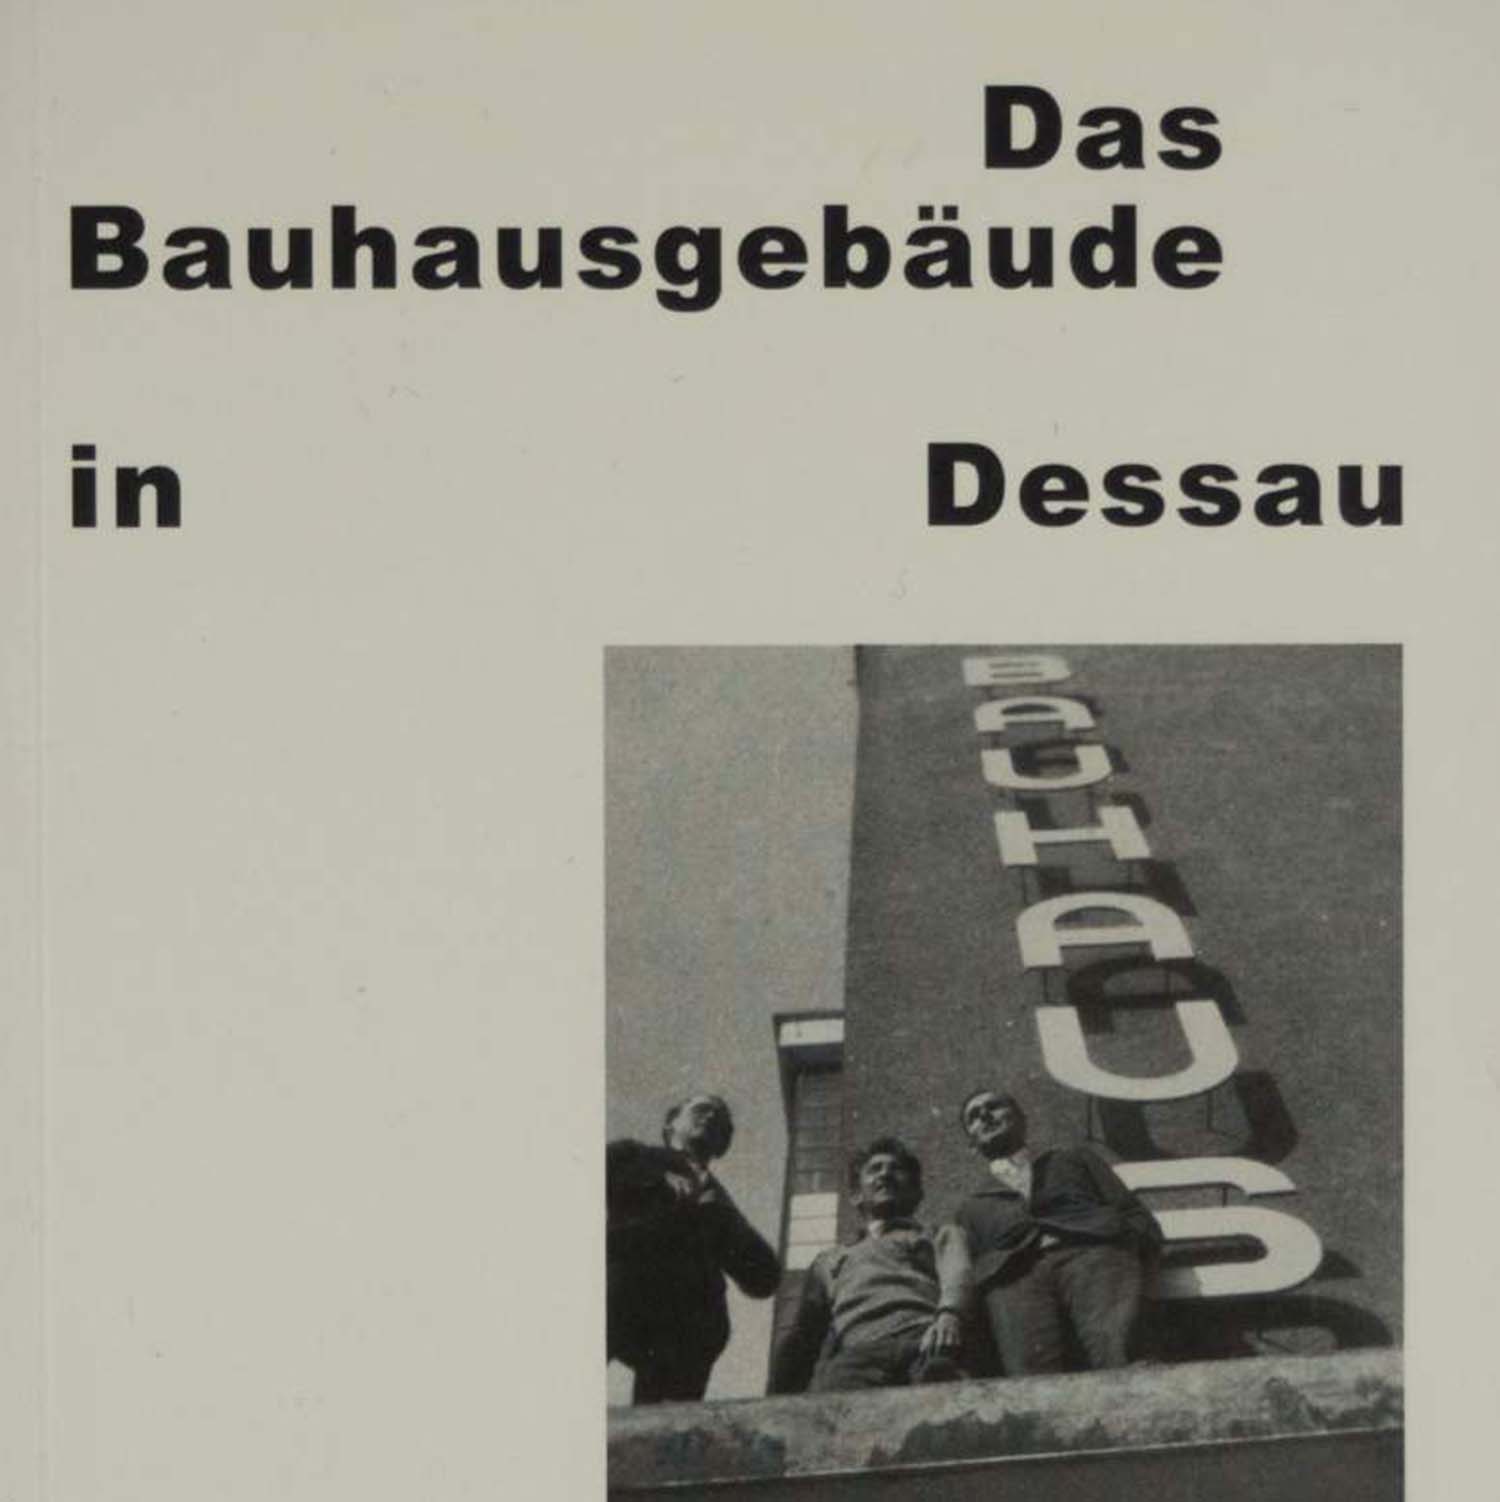 Dessau'daki Bauhaus binası resmi